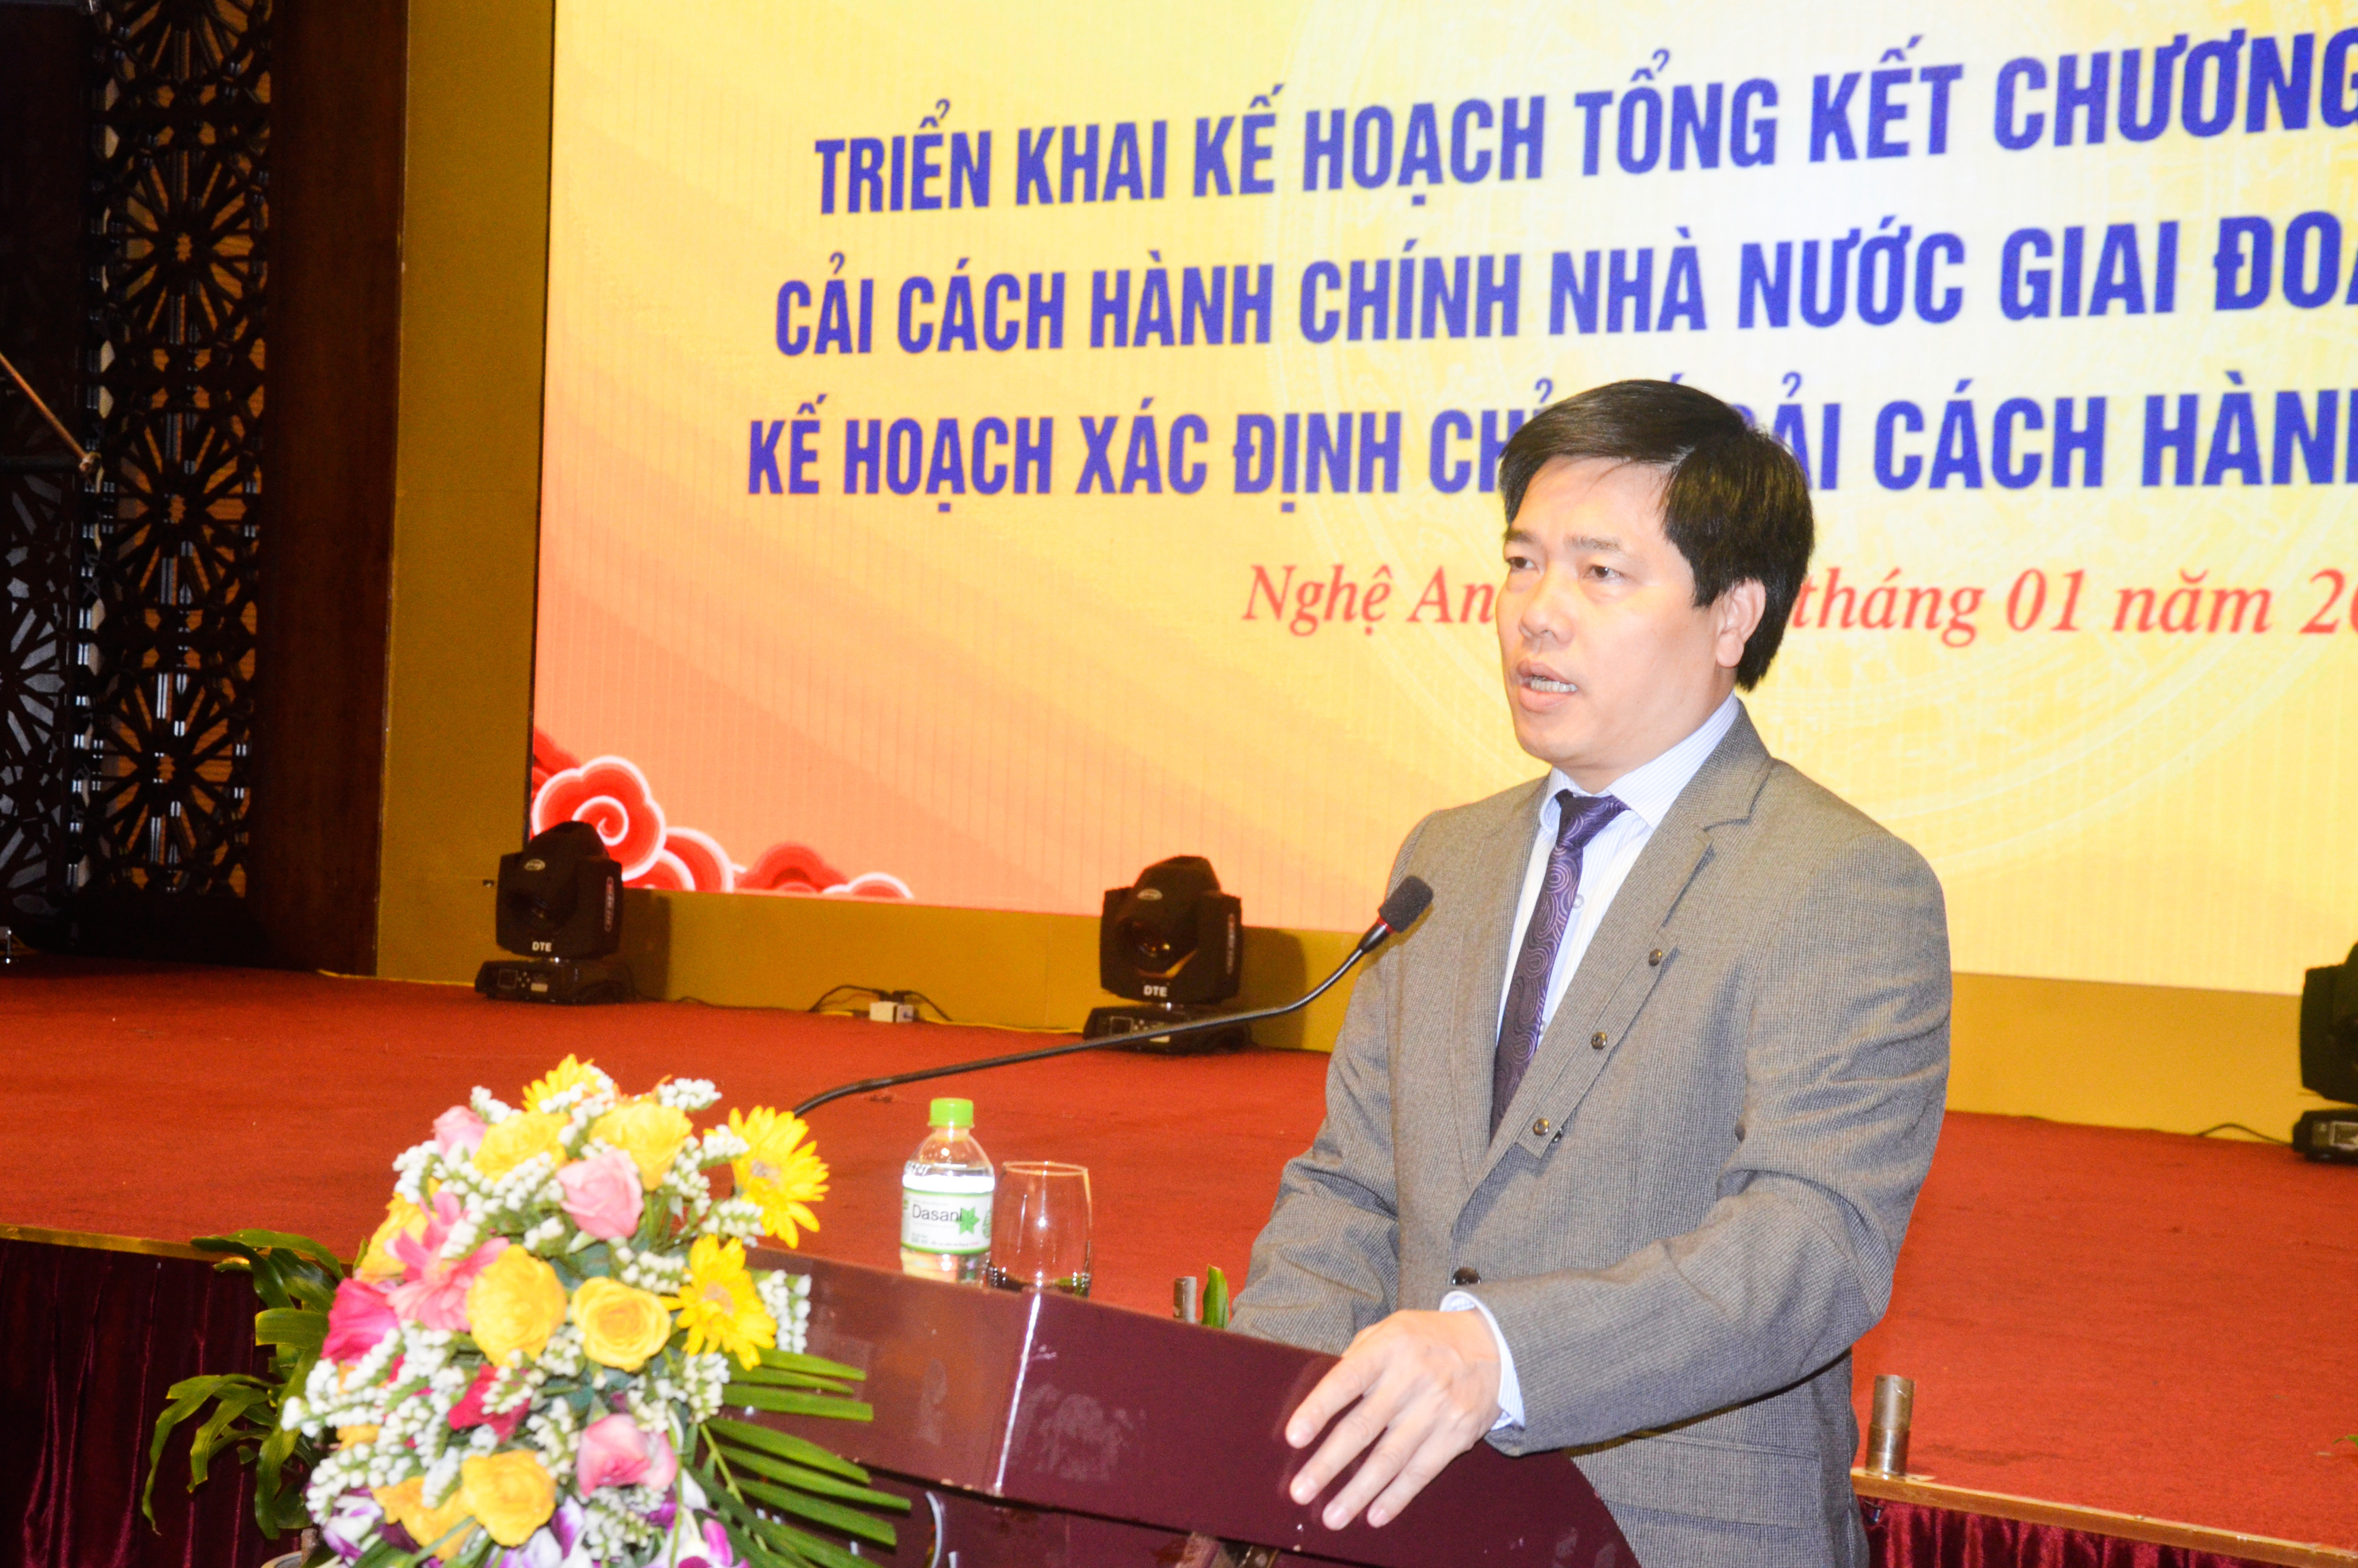 Đồng chí Phạm Mạnh Hùng phát biểu khai mạc hội nghị. Ảnh: Thanh Lê